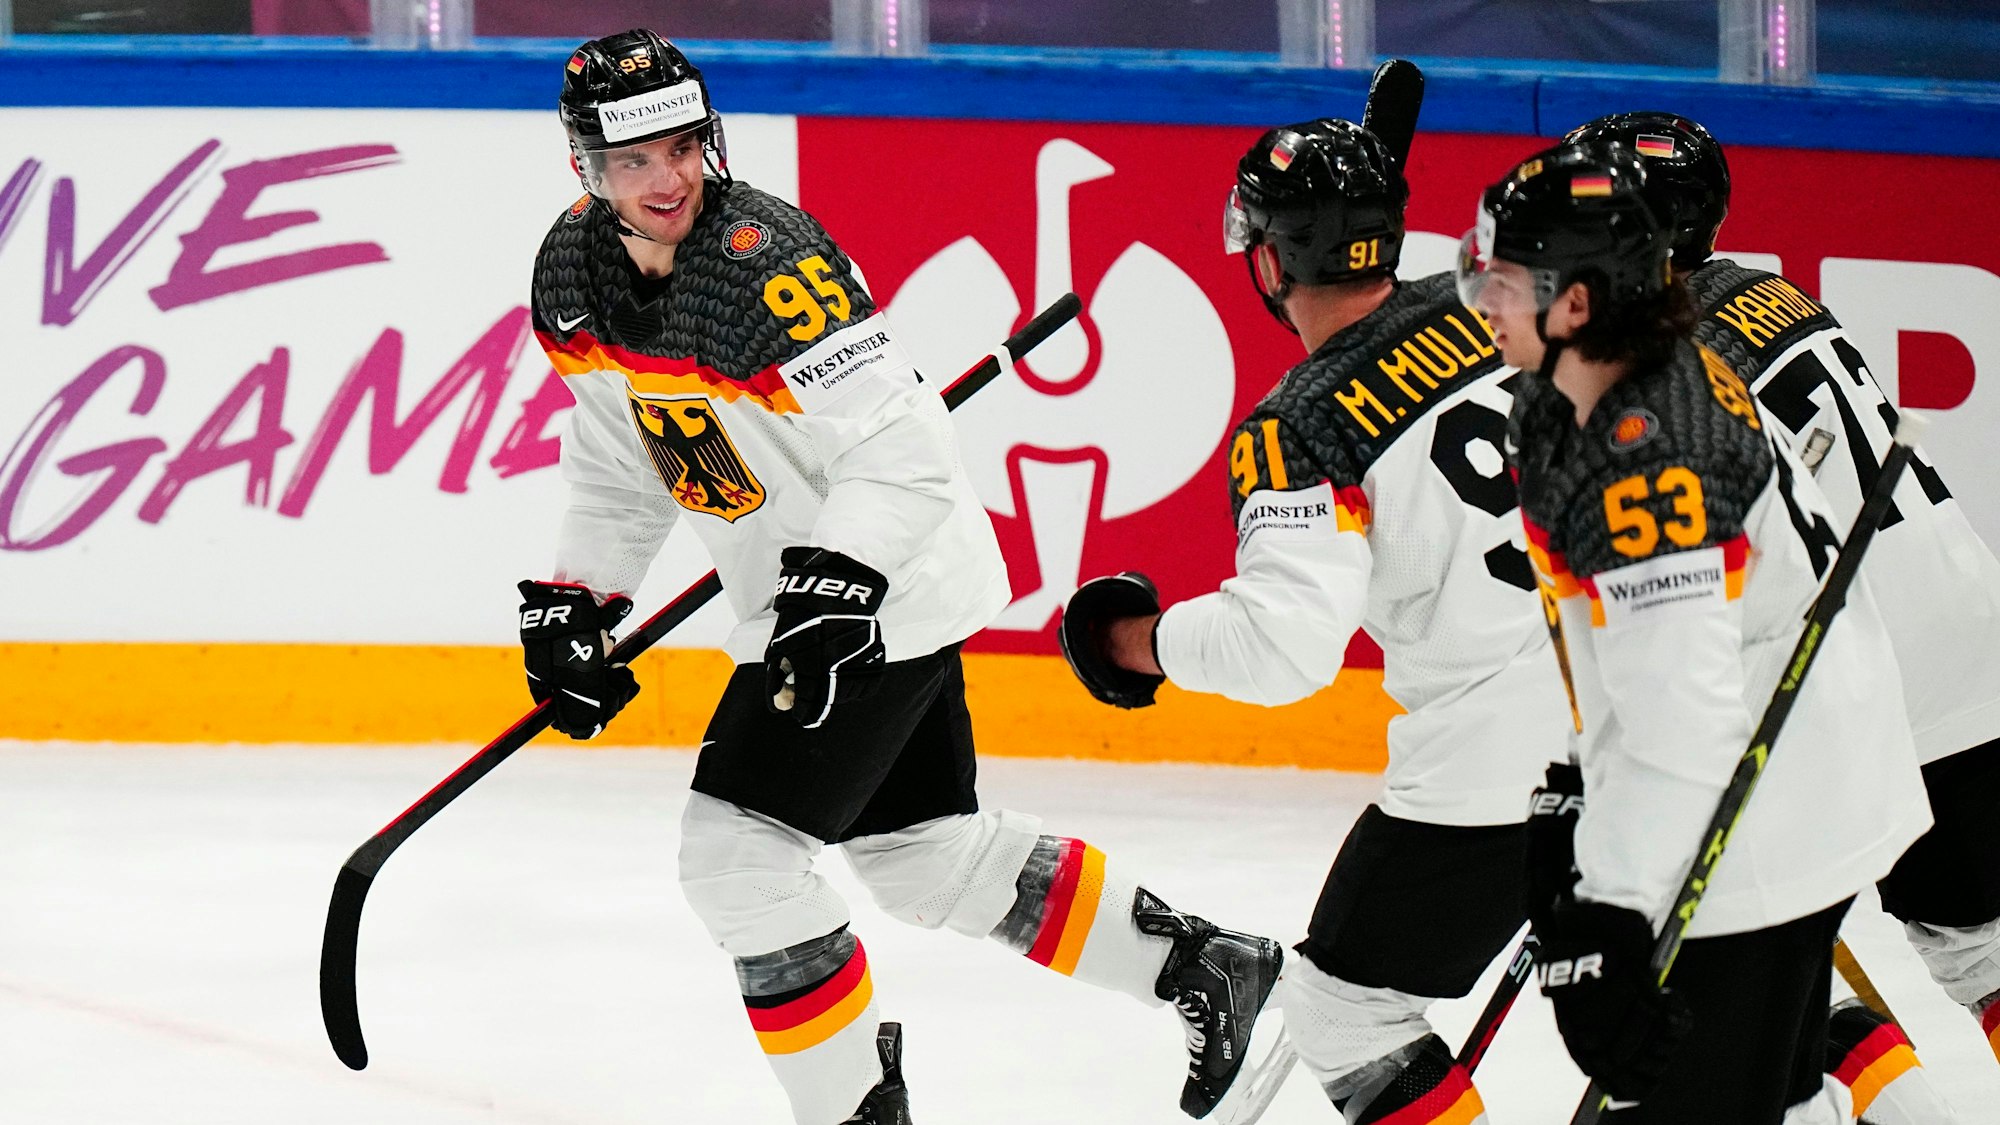 Spieler der deutschen Eishockey-Mannschaft mit Schlägern feiern auf der Spielfläche ein Tor.